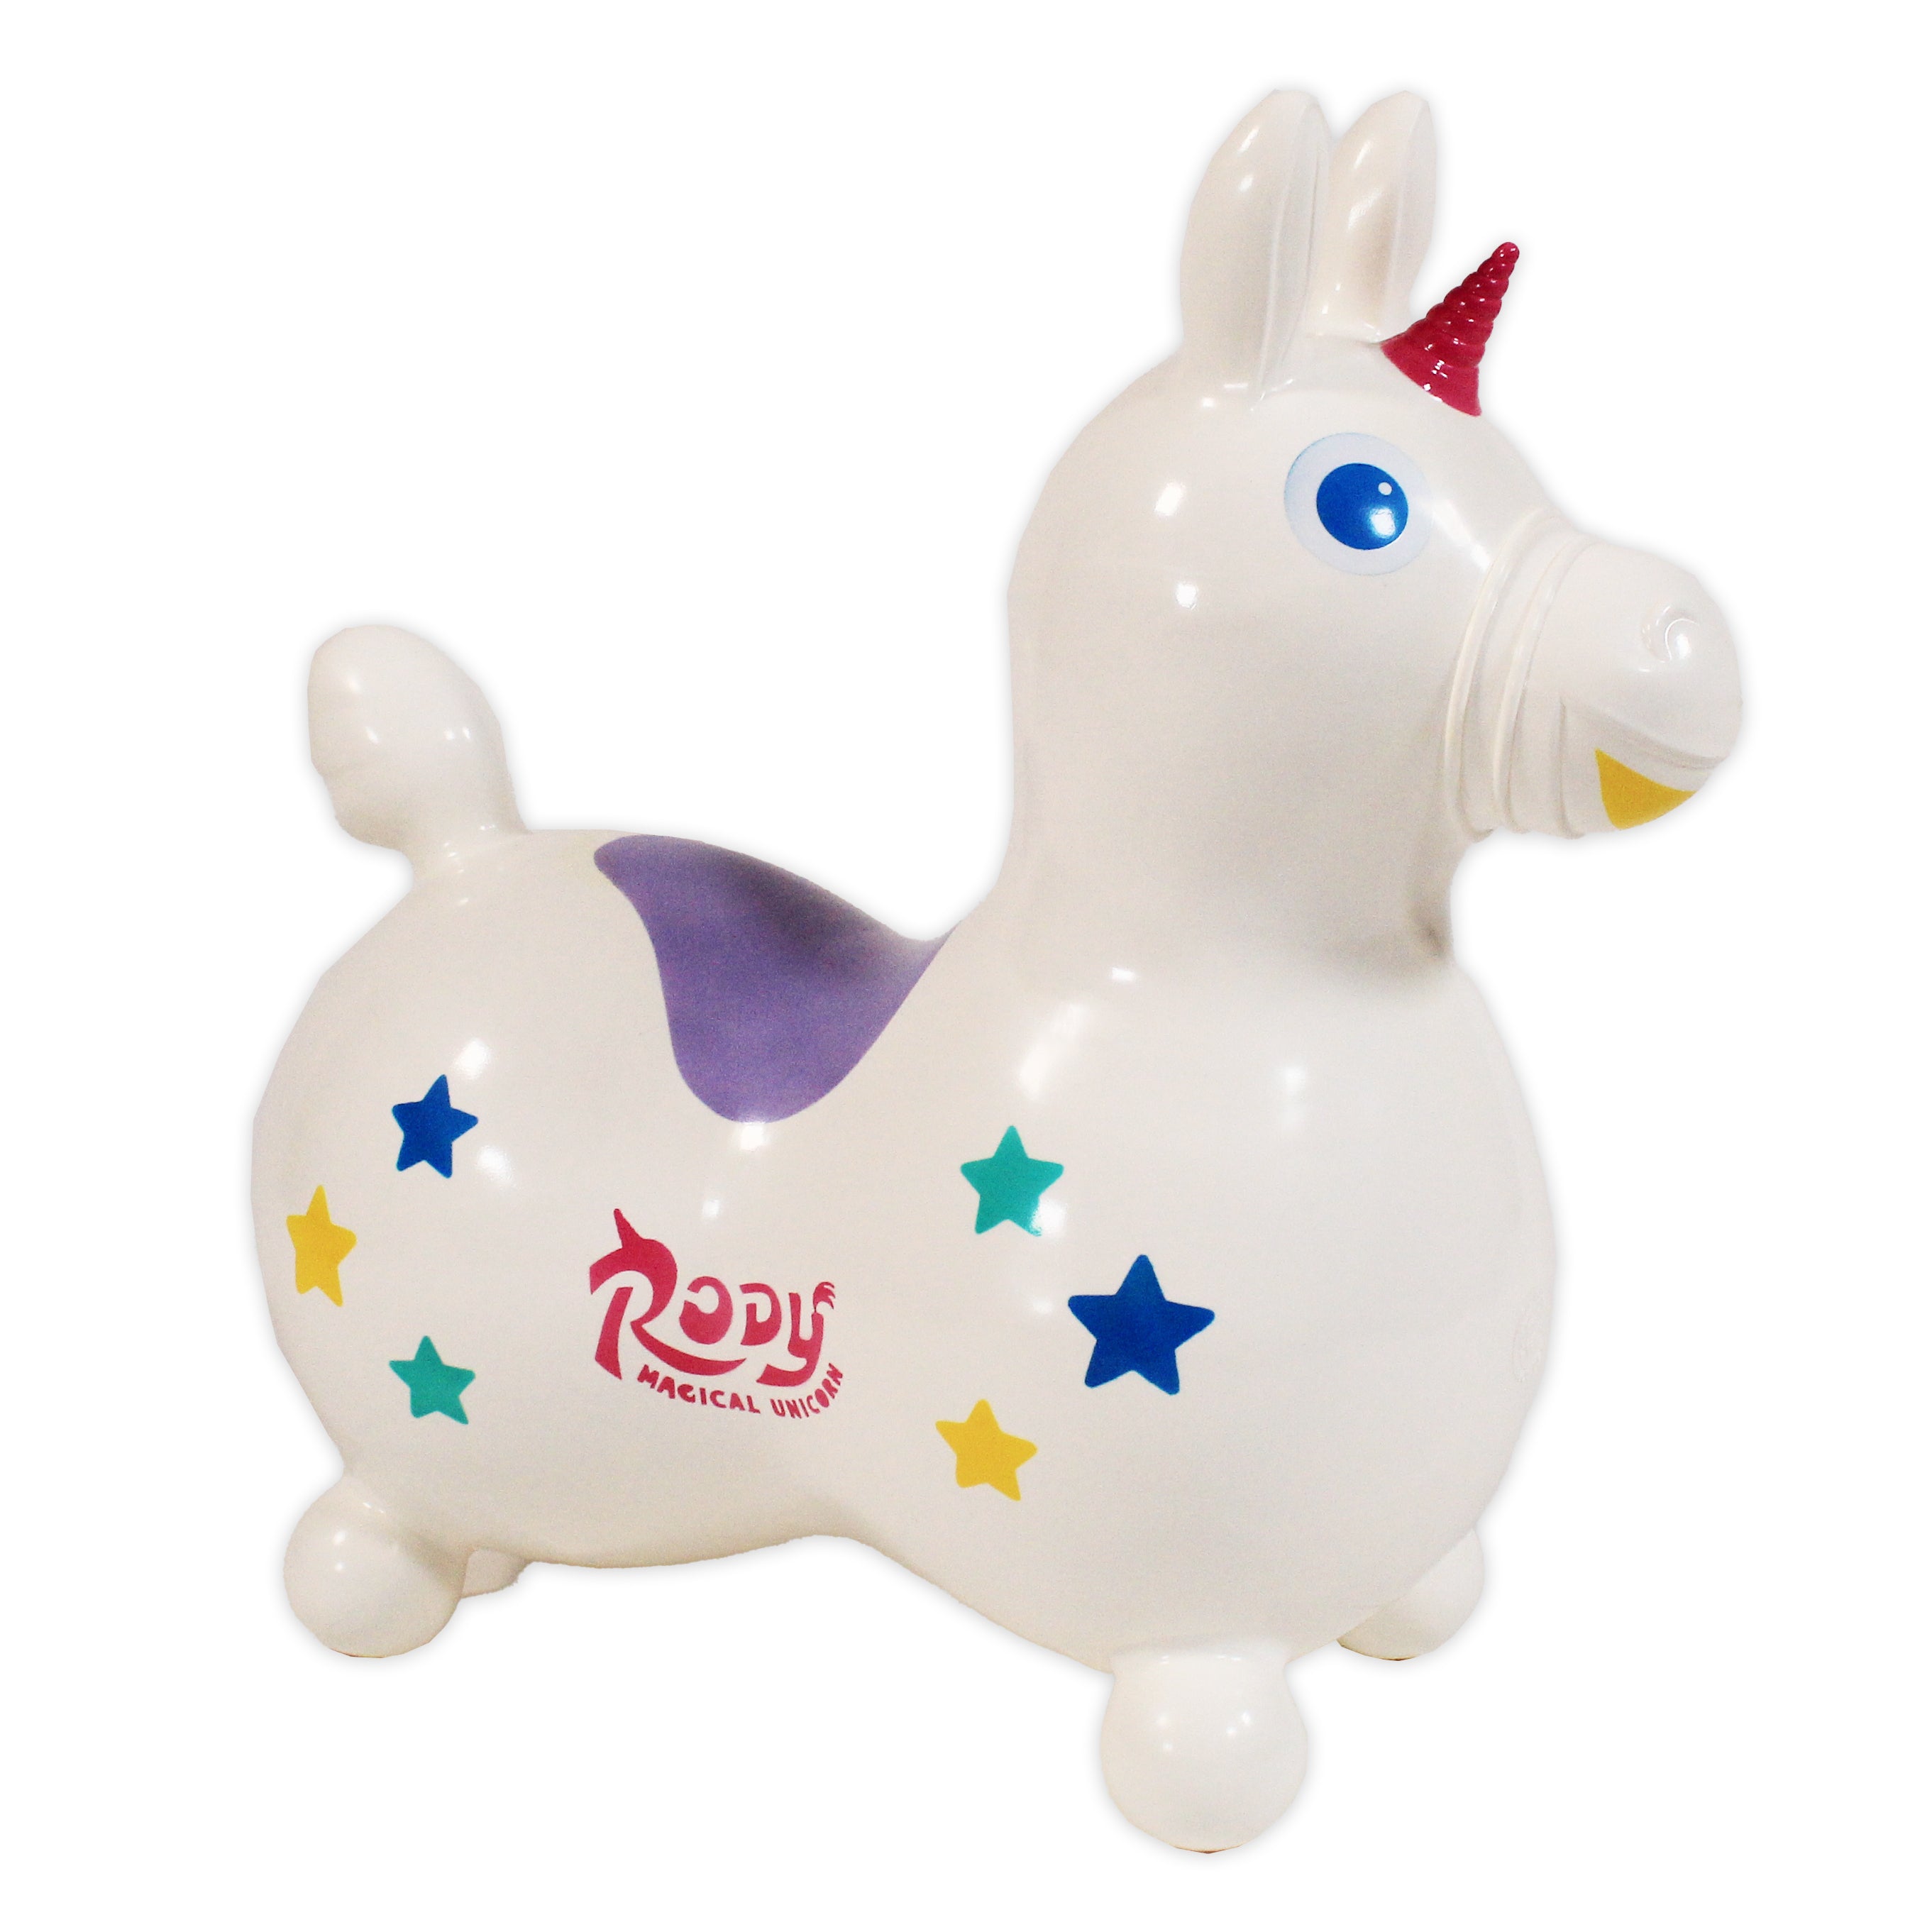 Rody Magical Unicorn With Rocking Base